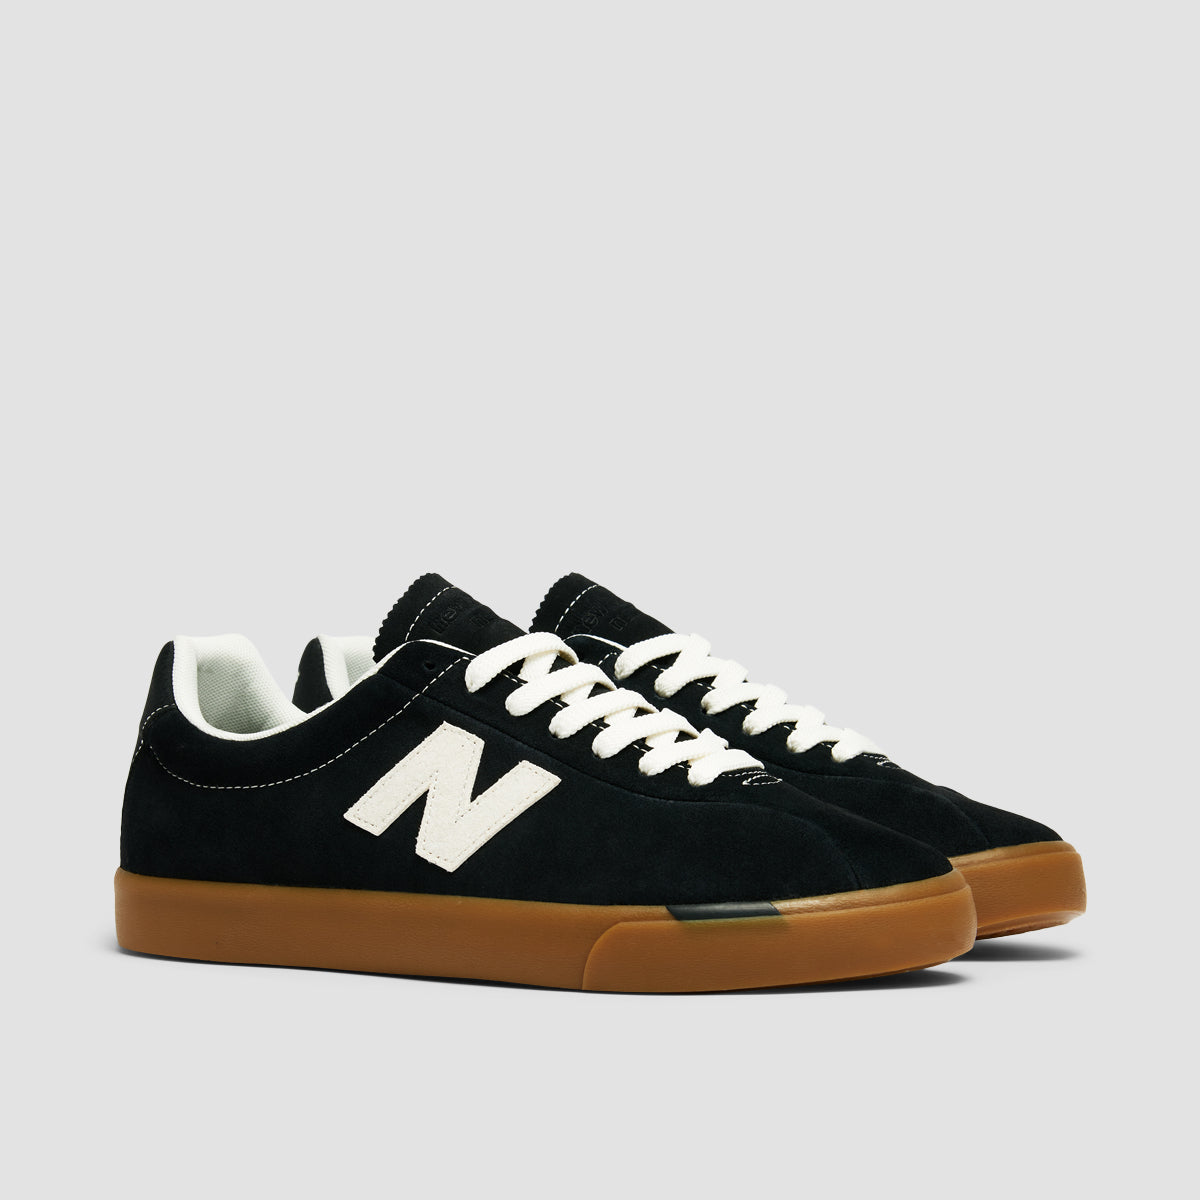 New Balance Numeric 22 Shoes - Black/White